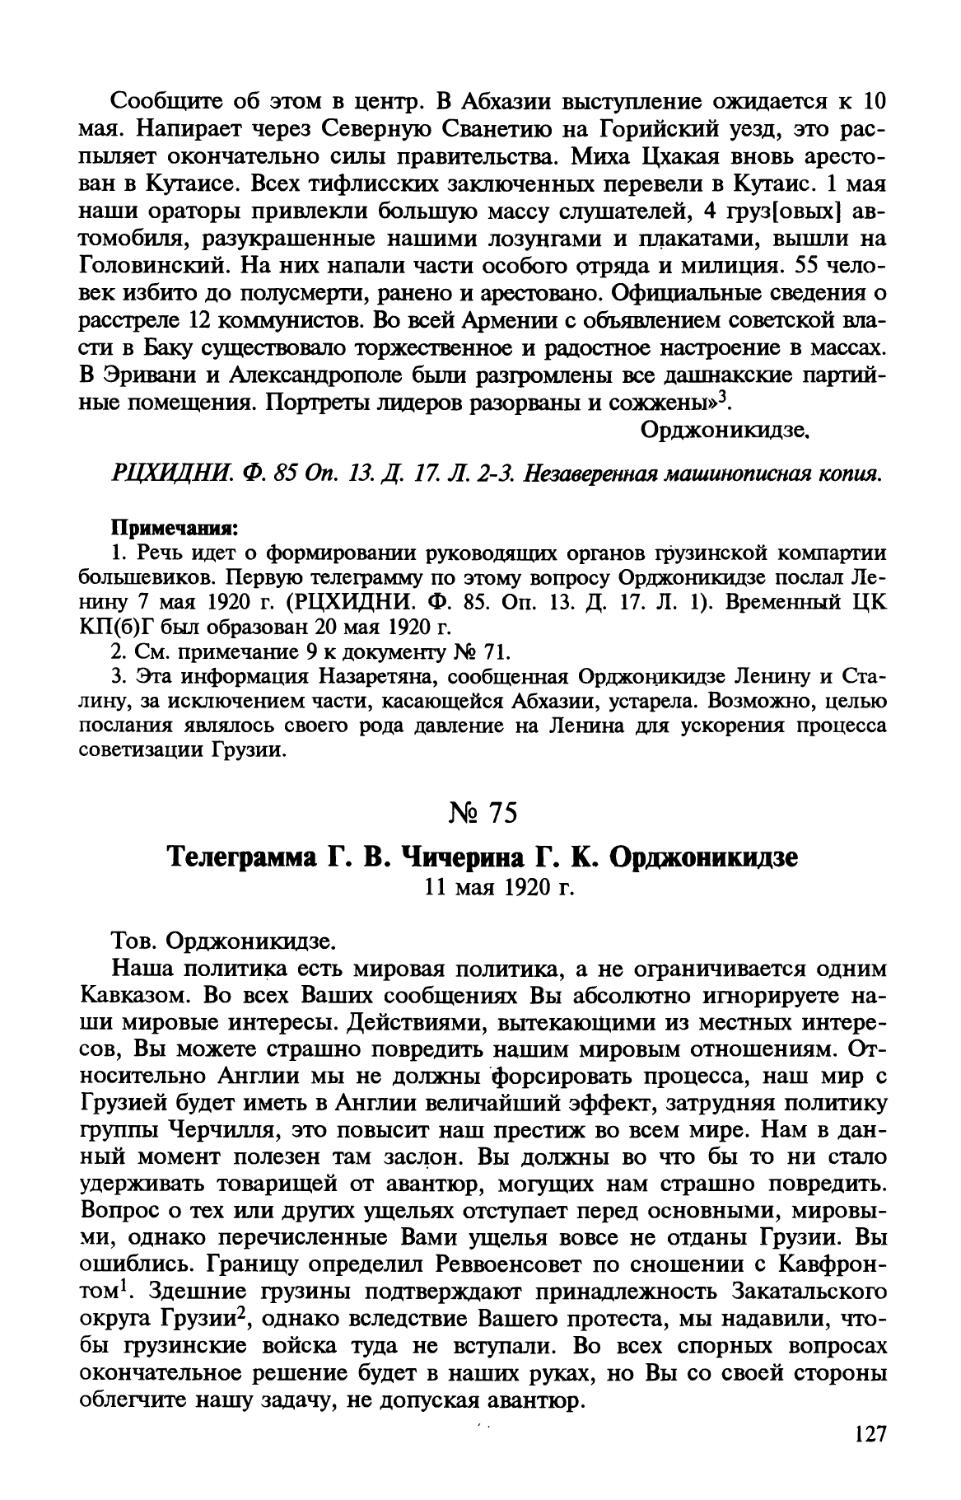 75. Телеграмма Г. В. Чичерина Г. К. Орджоникидзе. 11 мая 1920 г.